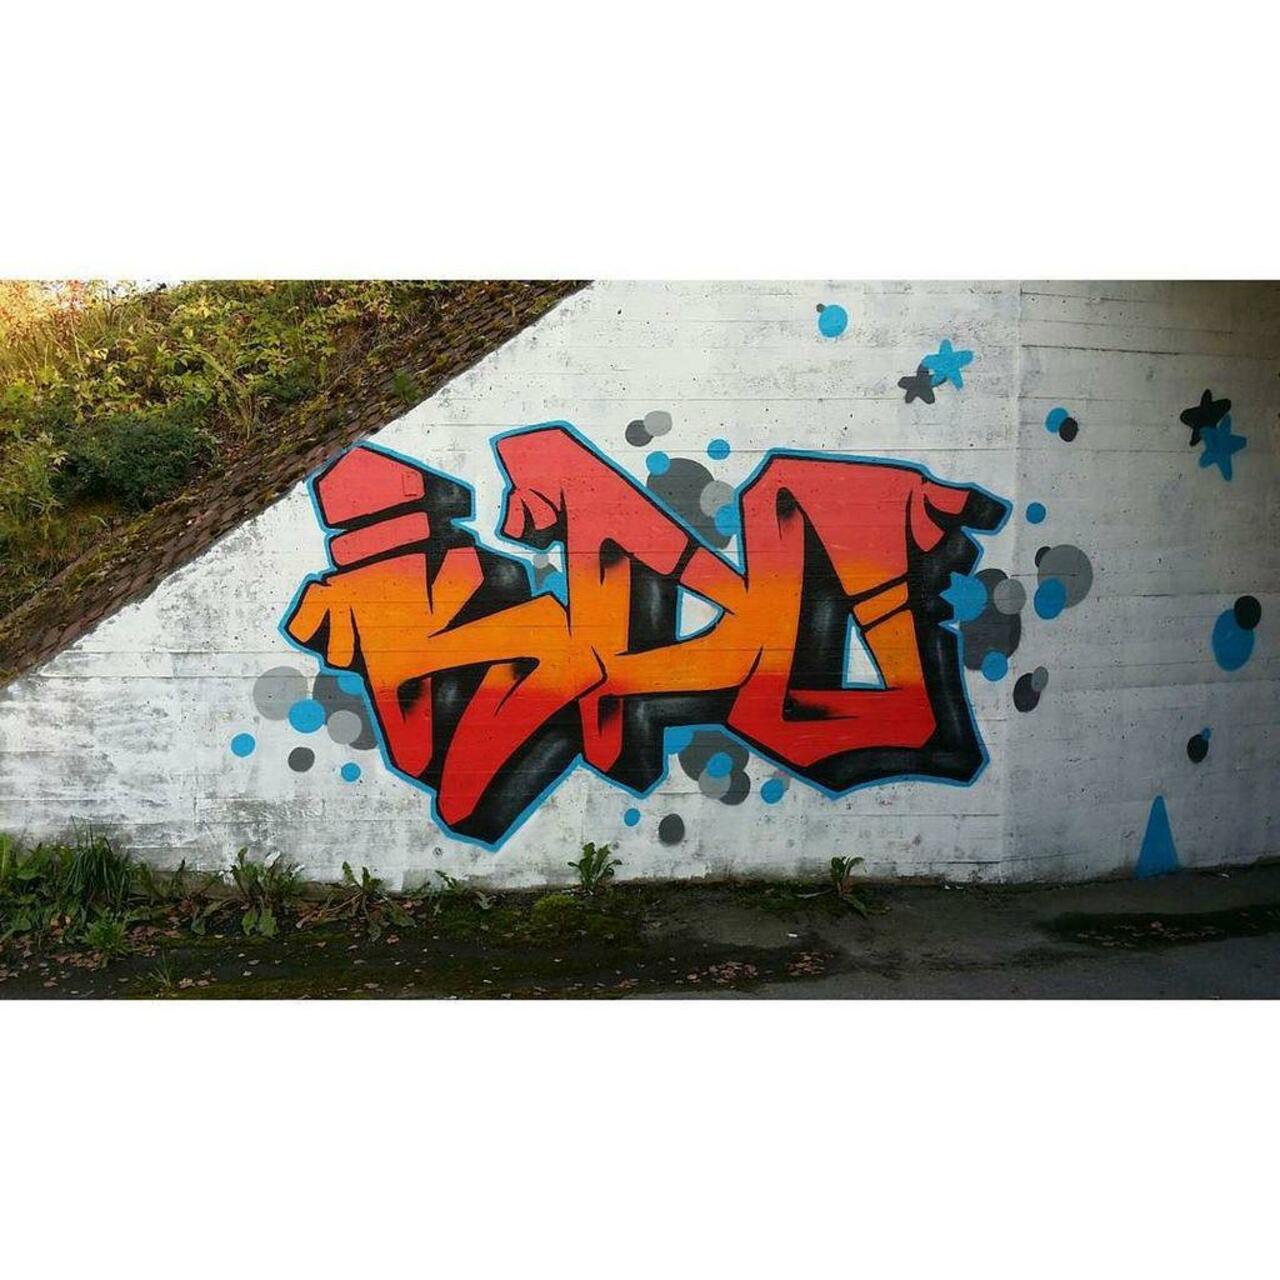 KPO.

#graffiti #graff #graffporn #graffitiporn #streetart #streetarteverywhere #instagraf… http://ift.tt/1NWlB5z http://t.co/bHPazeUy7v